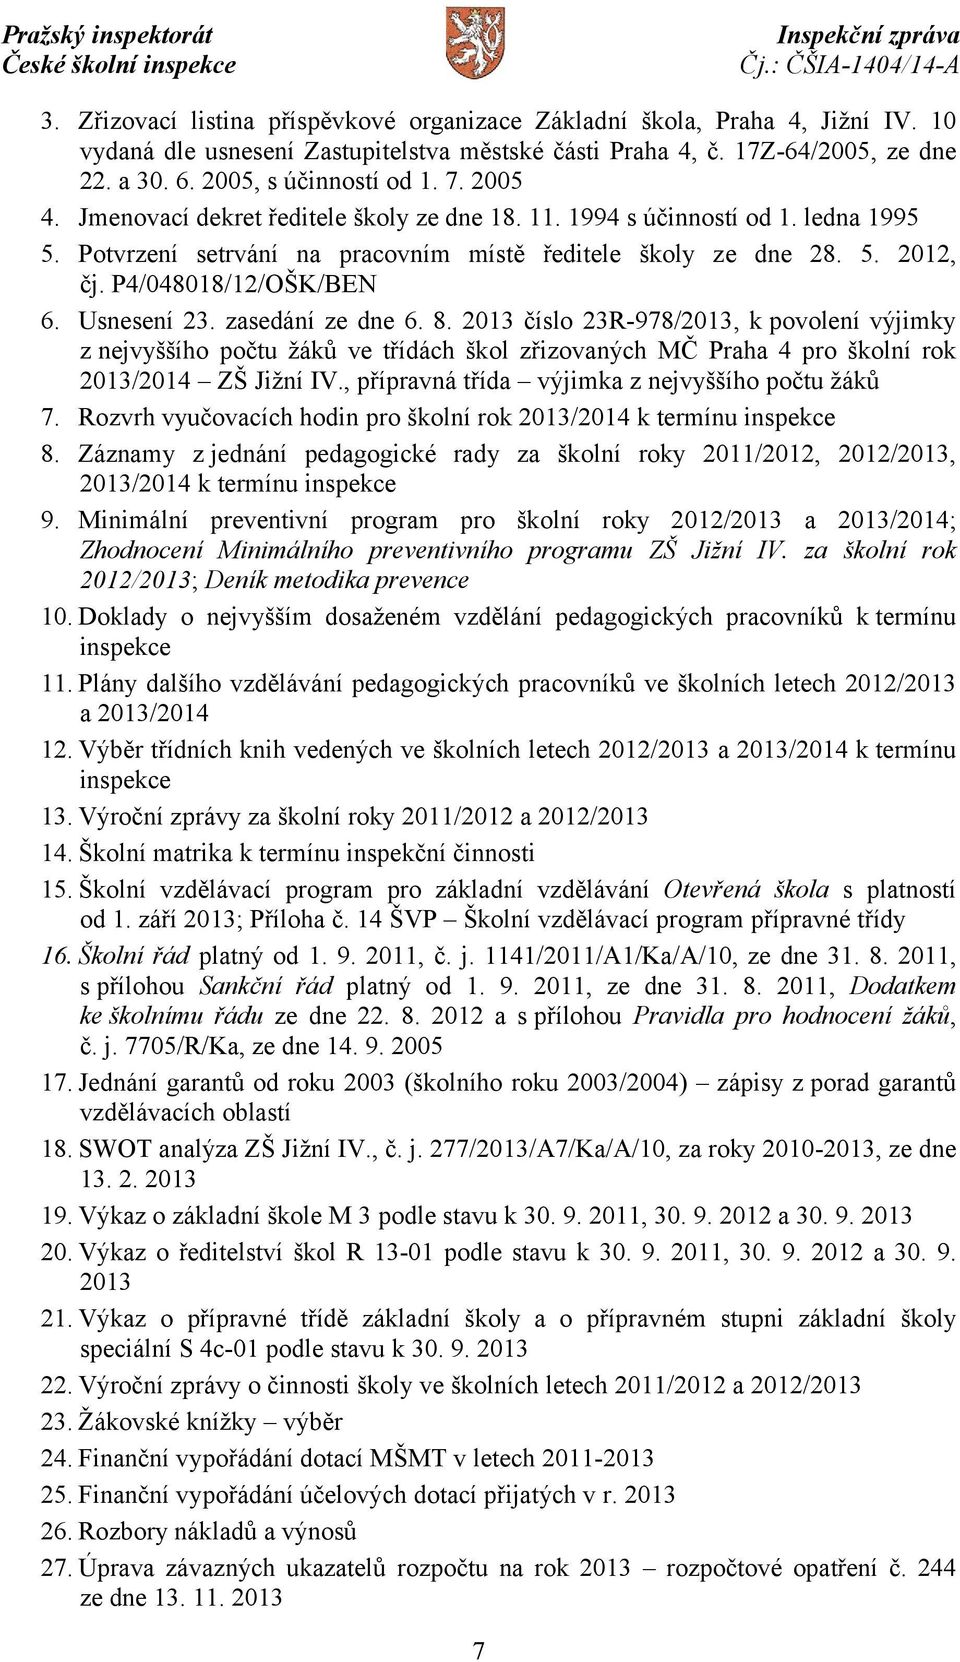 Usnesení 23. zasedání ze dne 6. 8. 2013 číslo 23R-978/2013, k povolení výjimky z nejvyššího počtu žáků ve třídách škol zřizovaných MČ Praha 4 pro školní rok 2013/2014 ZŠ Jižní IV.